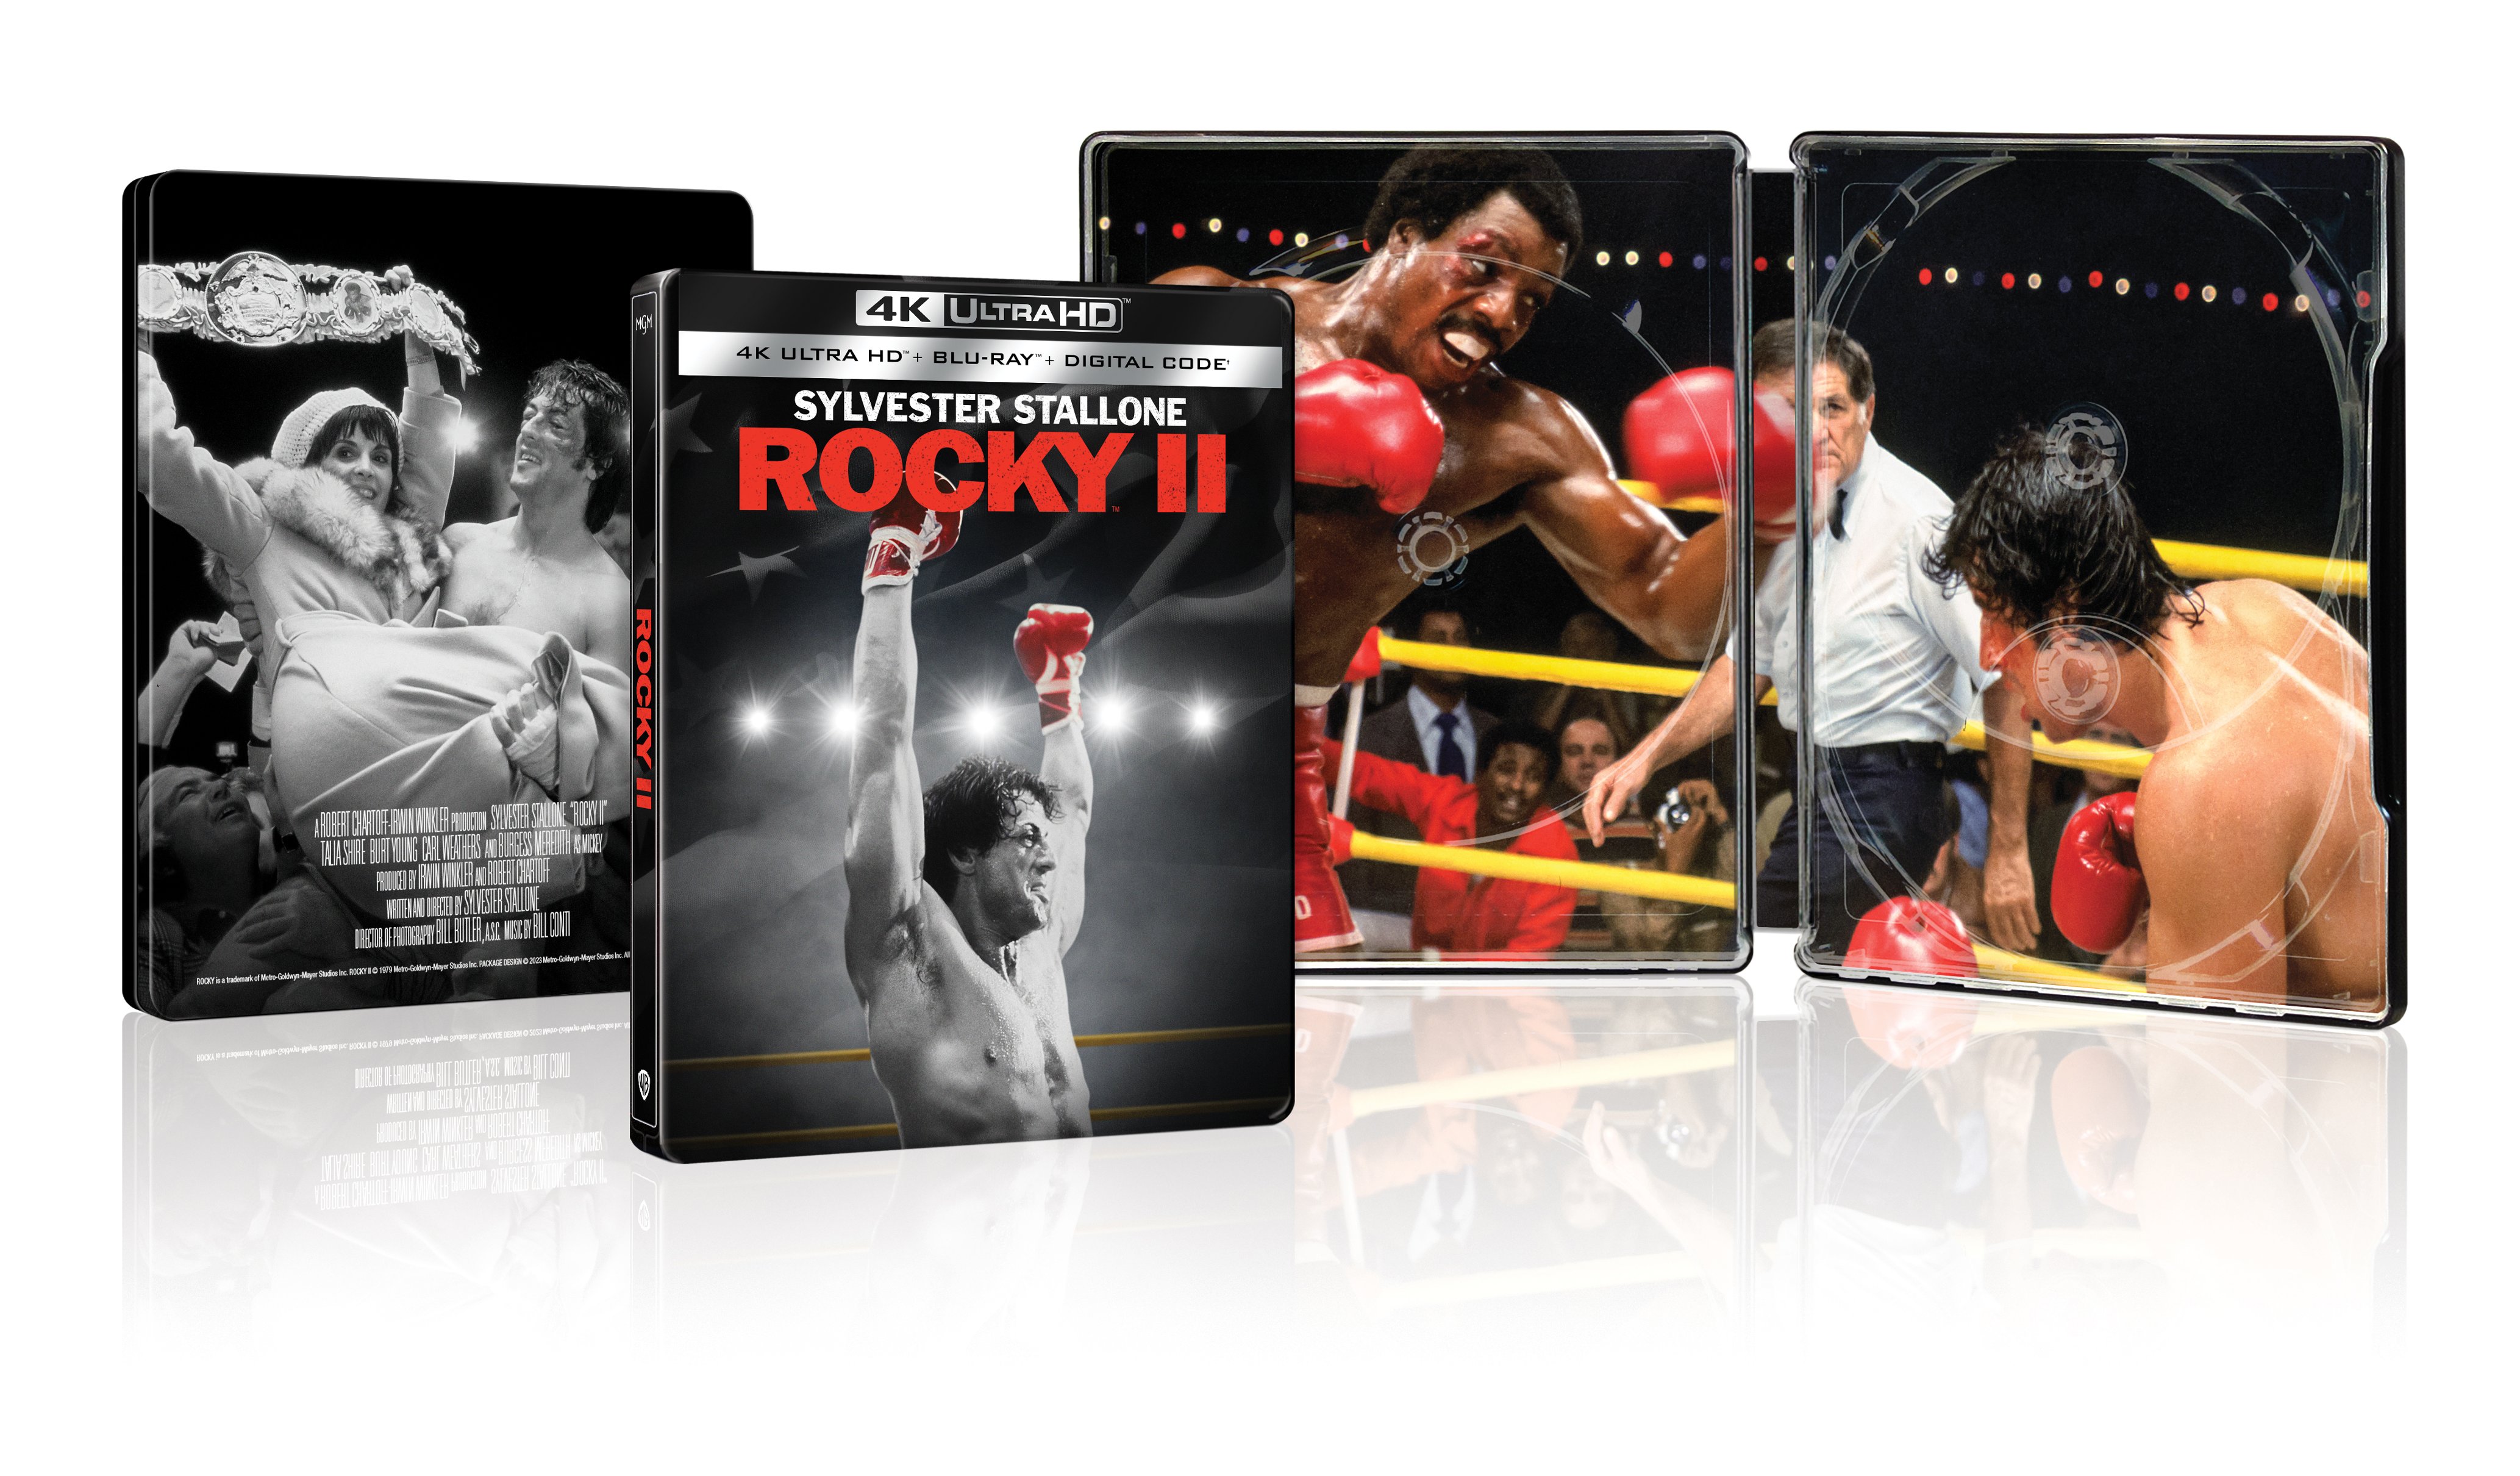 Rocky II [SteelBook] [Includes Digital Copy] [4K Ultra HD Blu-ray/Blu-ray]  [Only @ Best Buy] [1979] - Best Buy